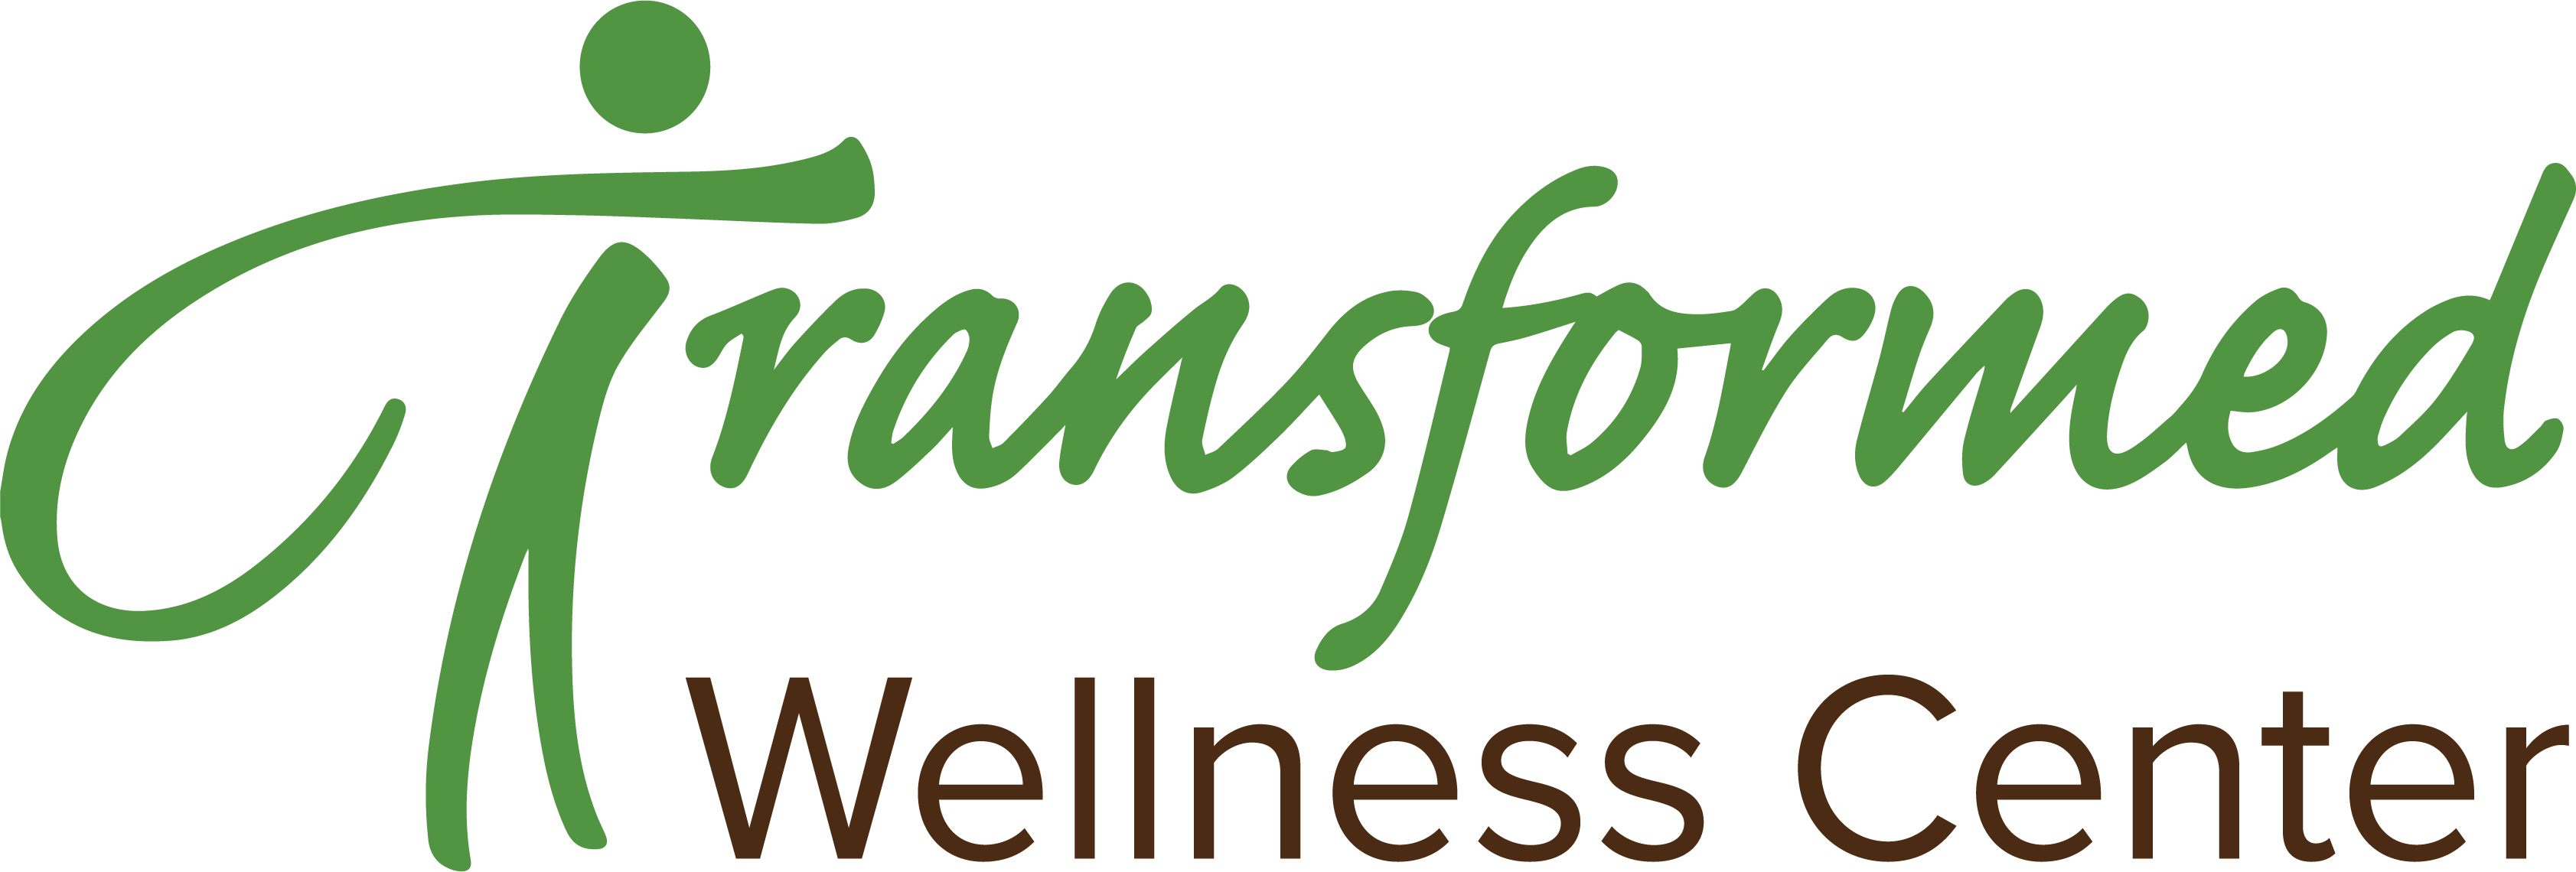 transformed wellness center color logo